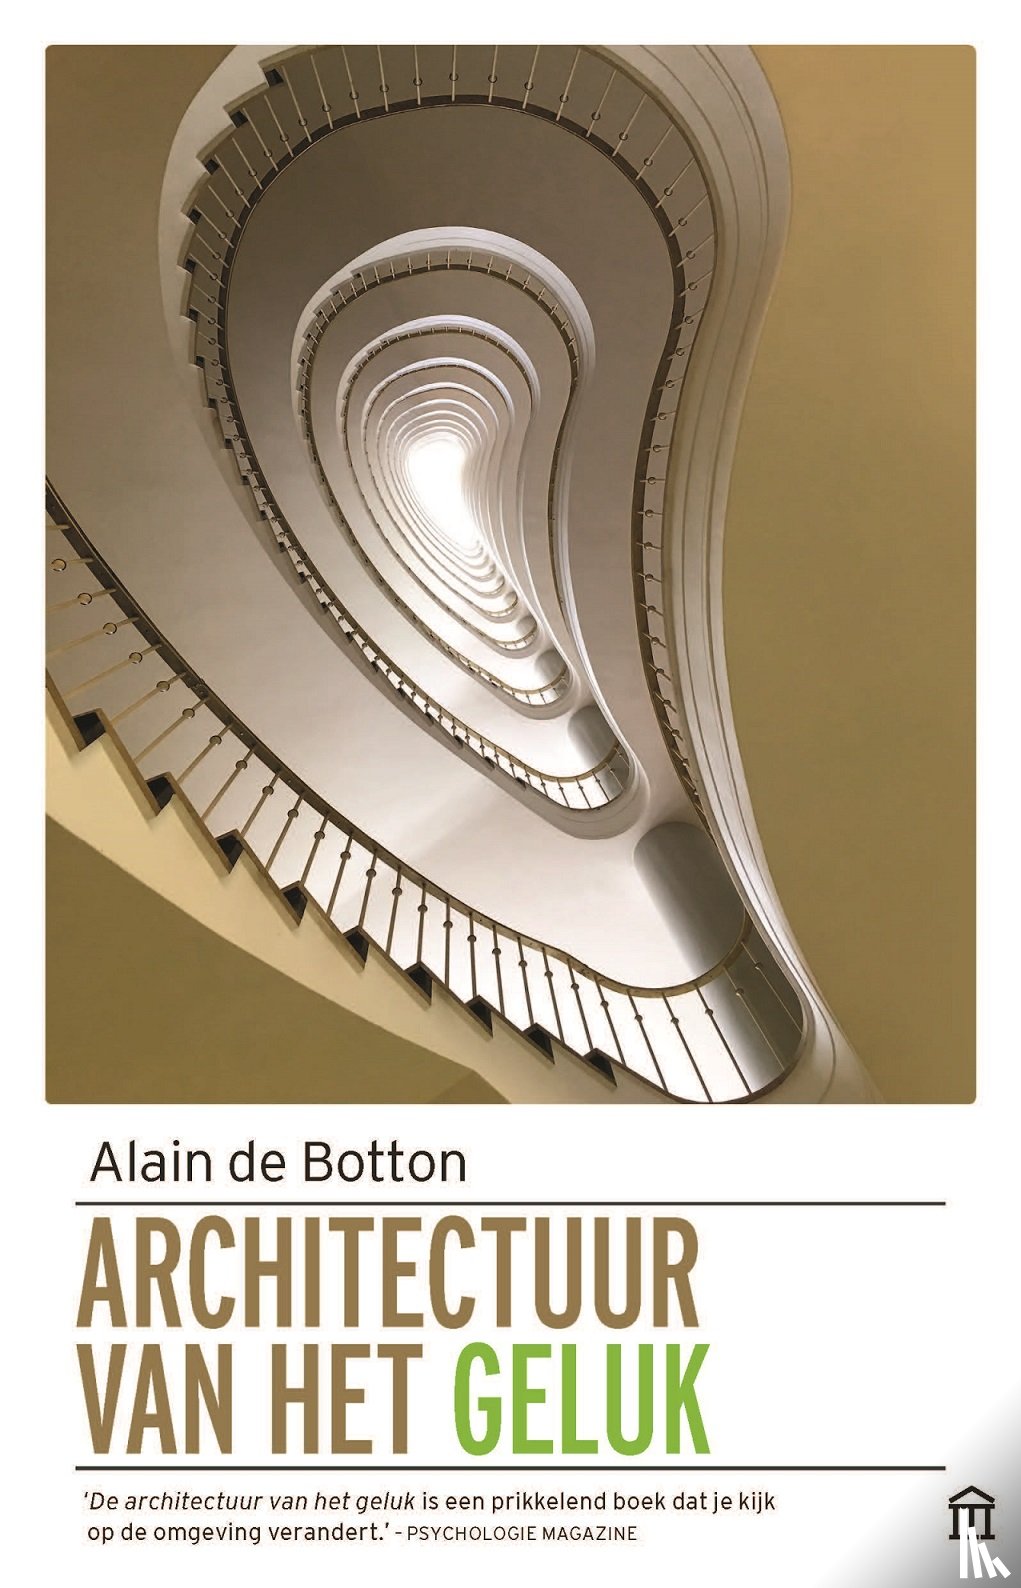 Botton, Alain de - De architectuur van het geluk